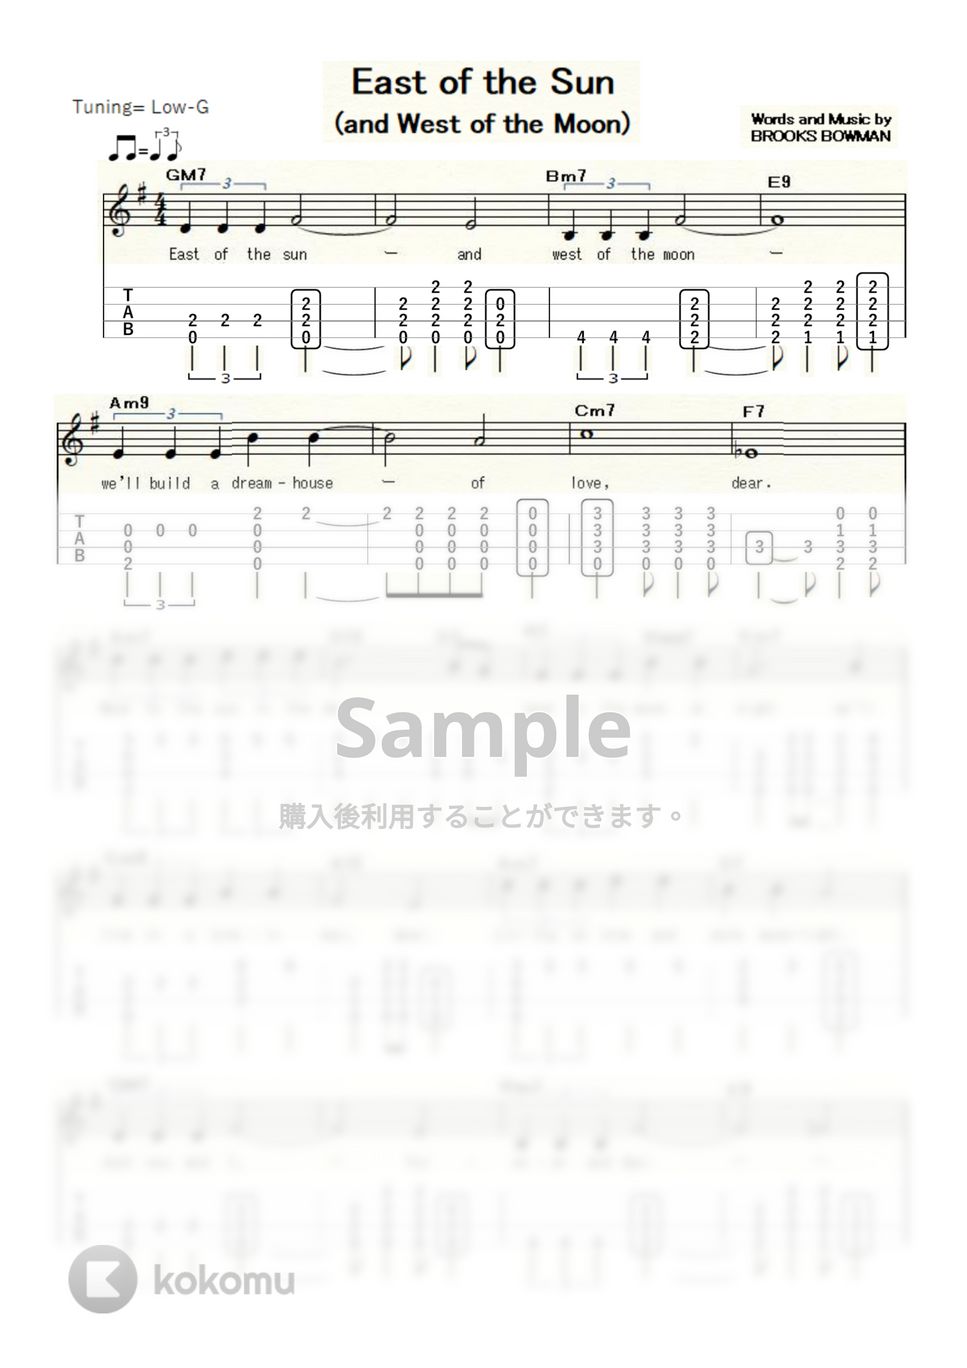 ブルックス・ボウマン - East of the Sun (ｳｸﾚﾚｿﾛ/Low-G/中級) by ukulelepapa